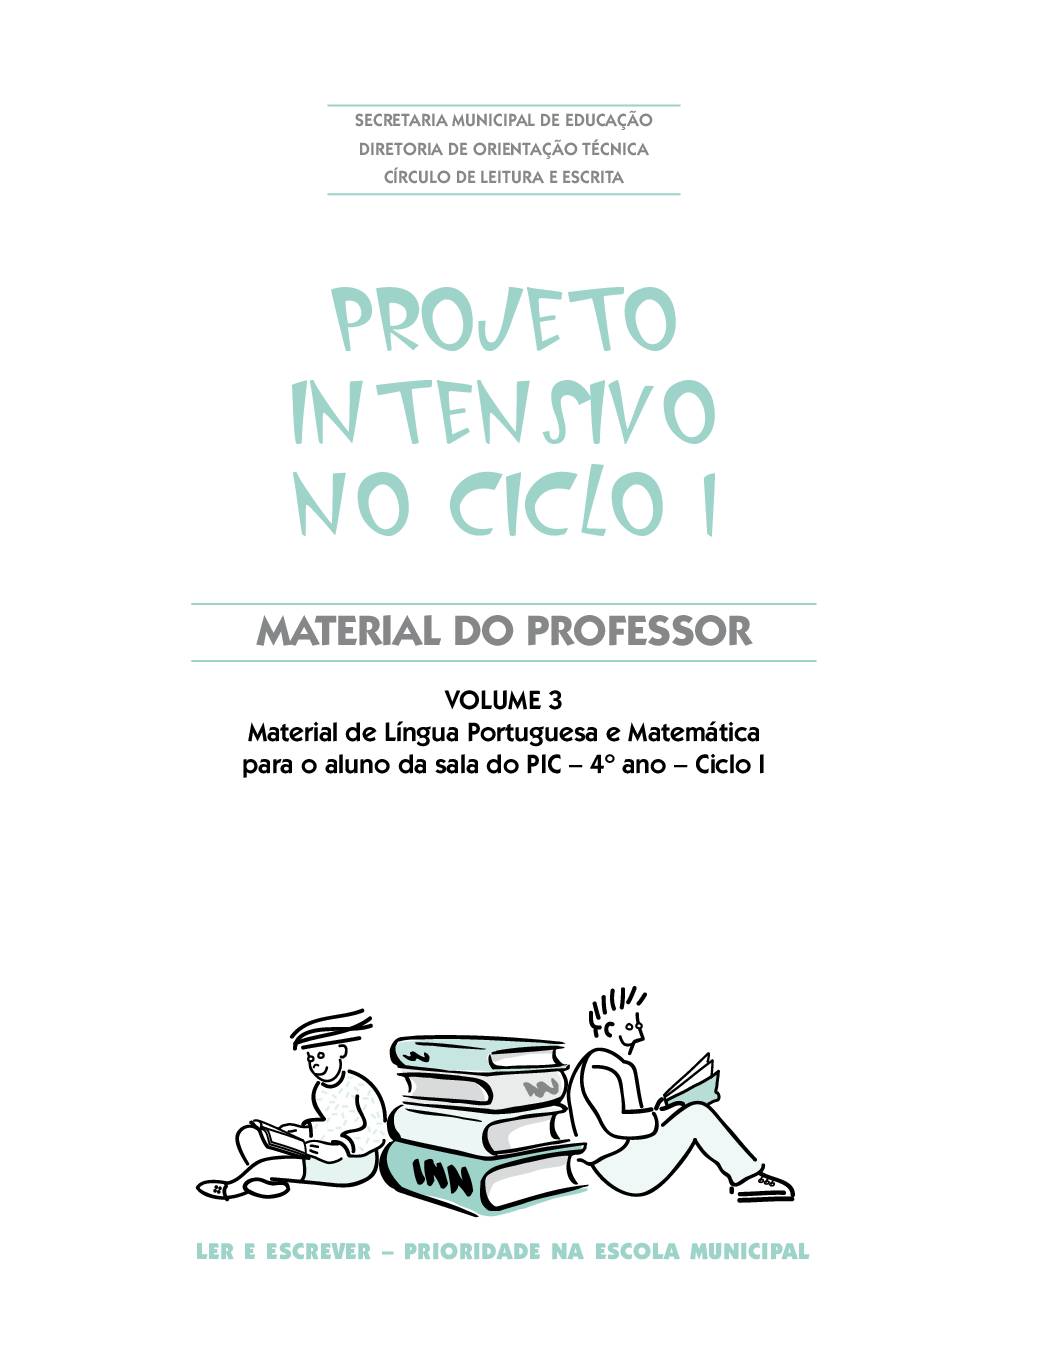 Material com orientações para os professores da sala do Projeto Intensivo do Ciclo I: Língua Portuguesa e Matemática - 4 º ano. Volume 3.